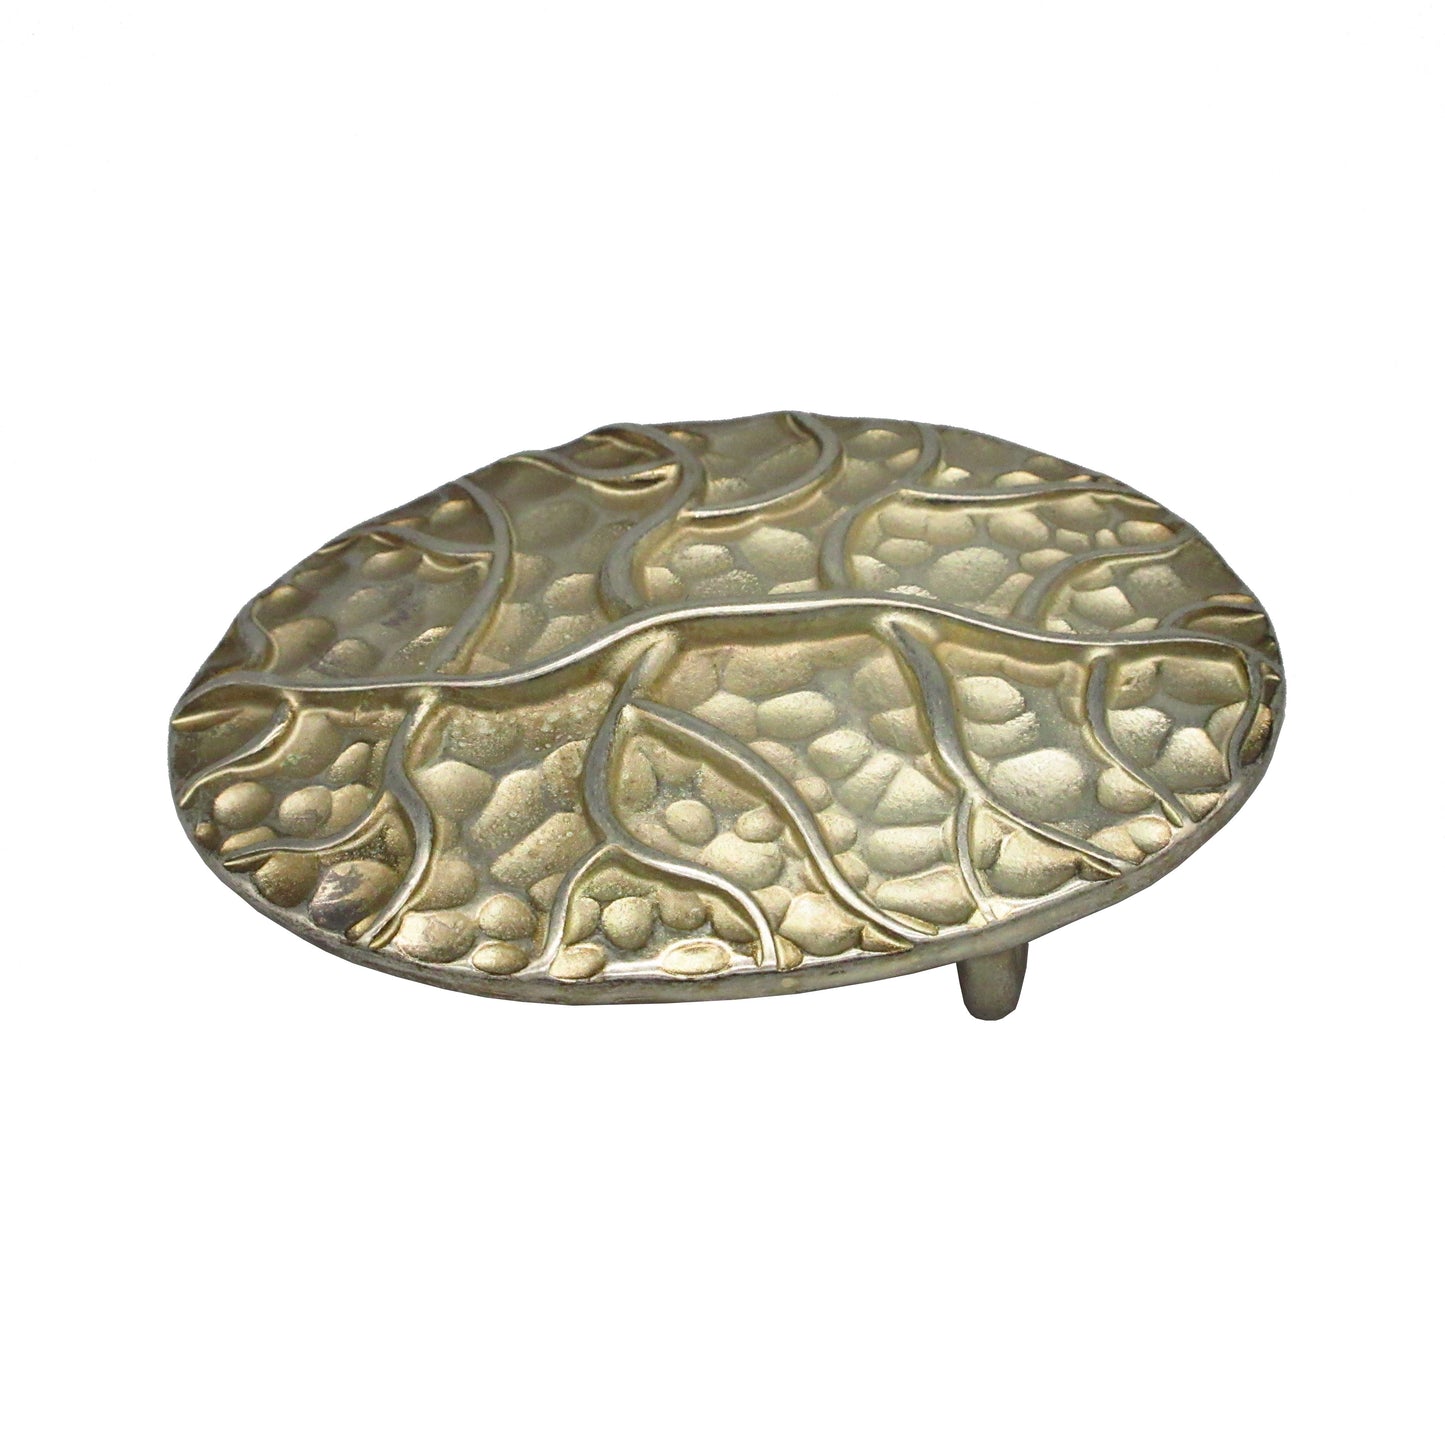 Gürtelschließe Gürtelschnalle Schnalle Buckle Gold Silber für 4 cm breiten Gürtel